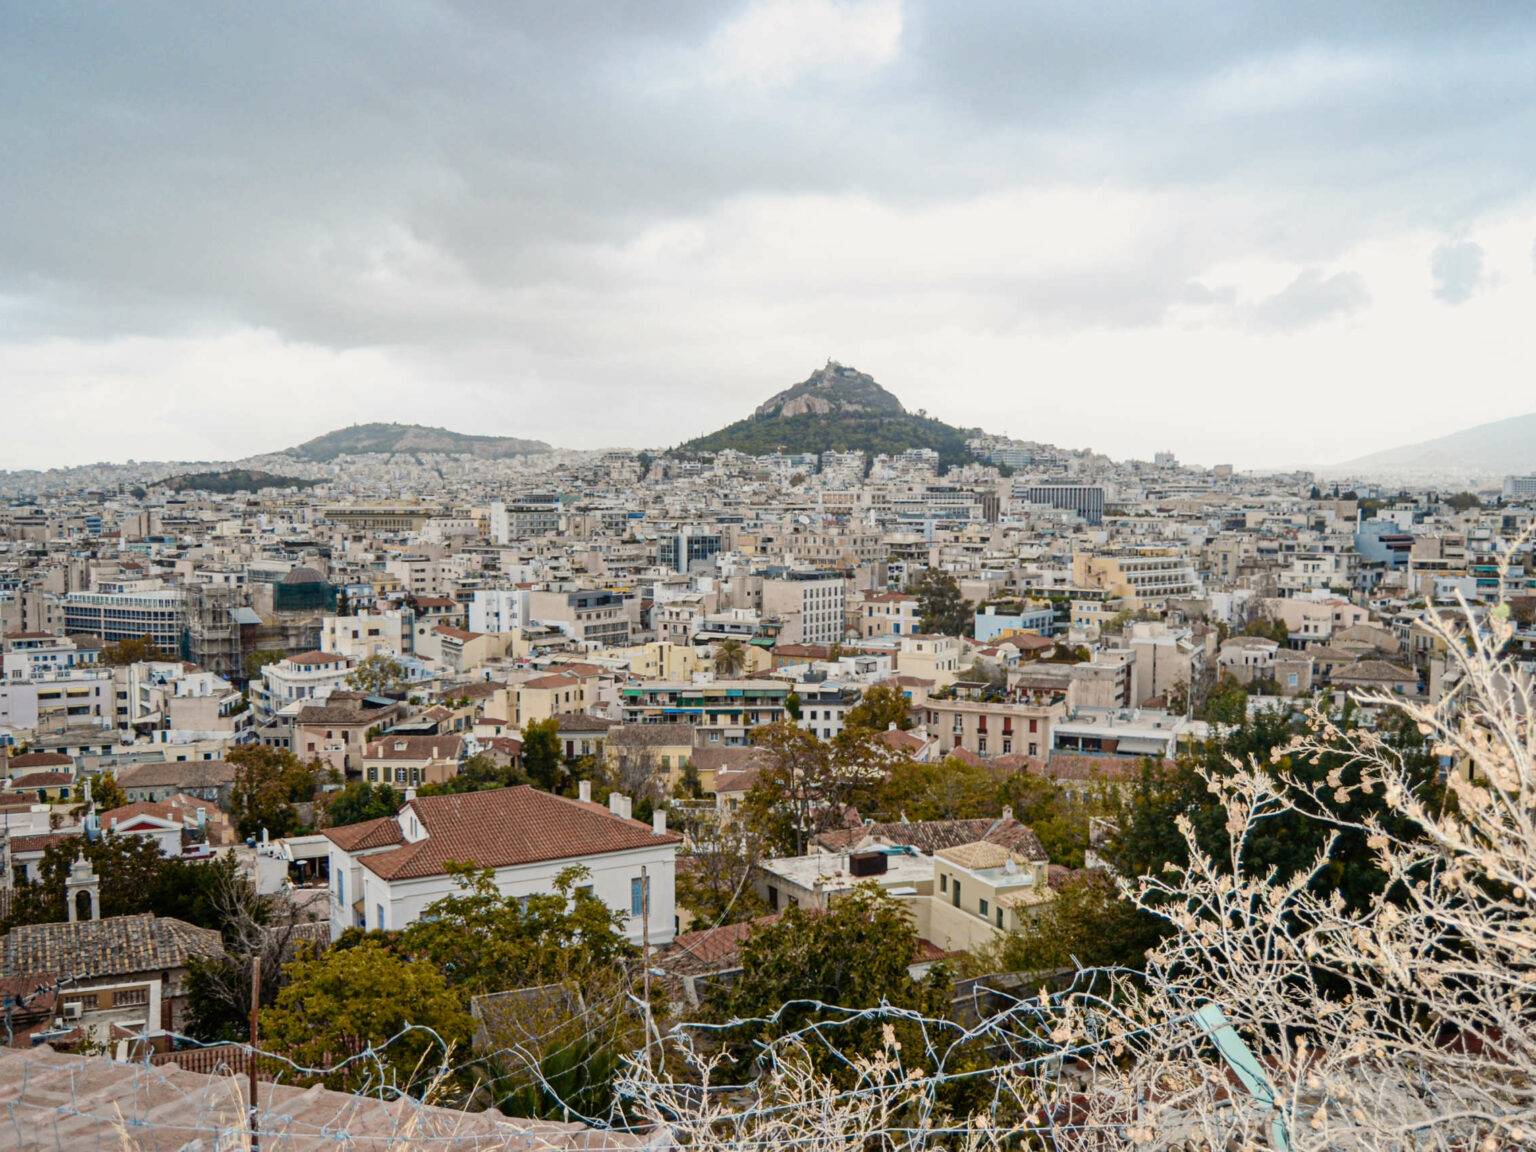 Skyline von Athen, Blick über Häuser und einen Berg i Hintergrund.